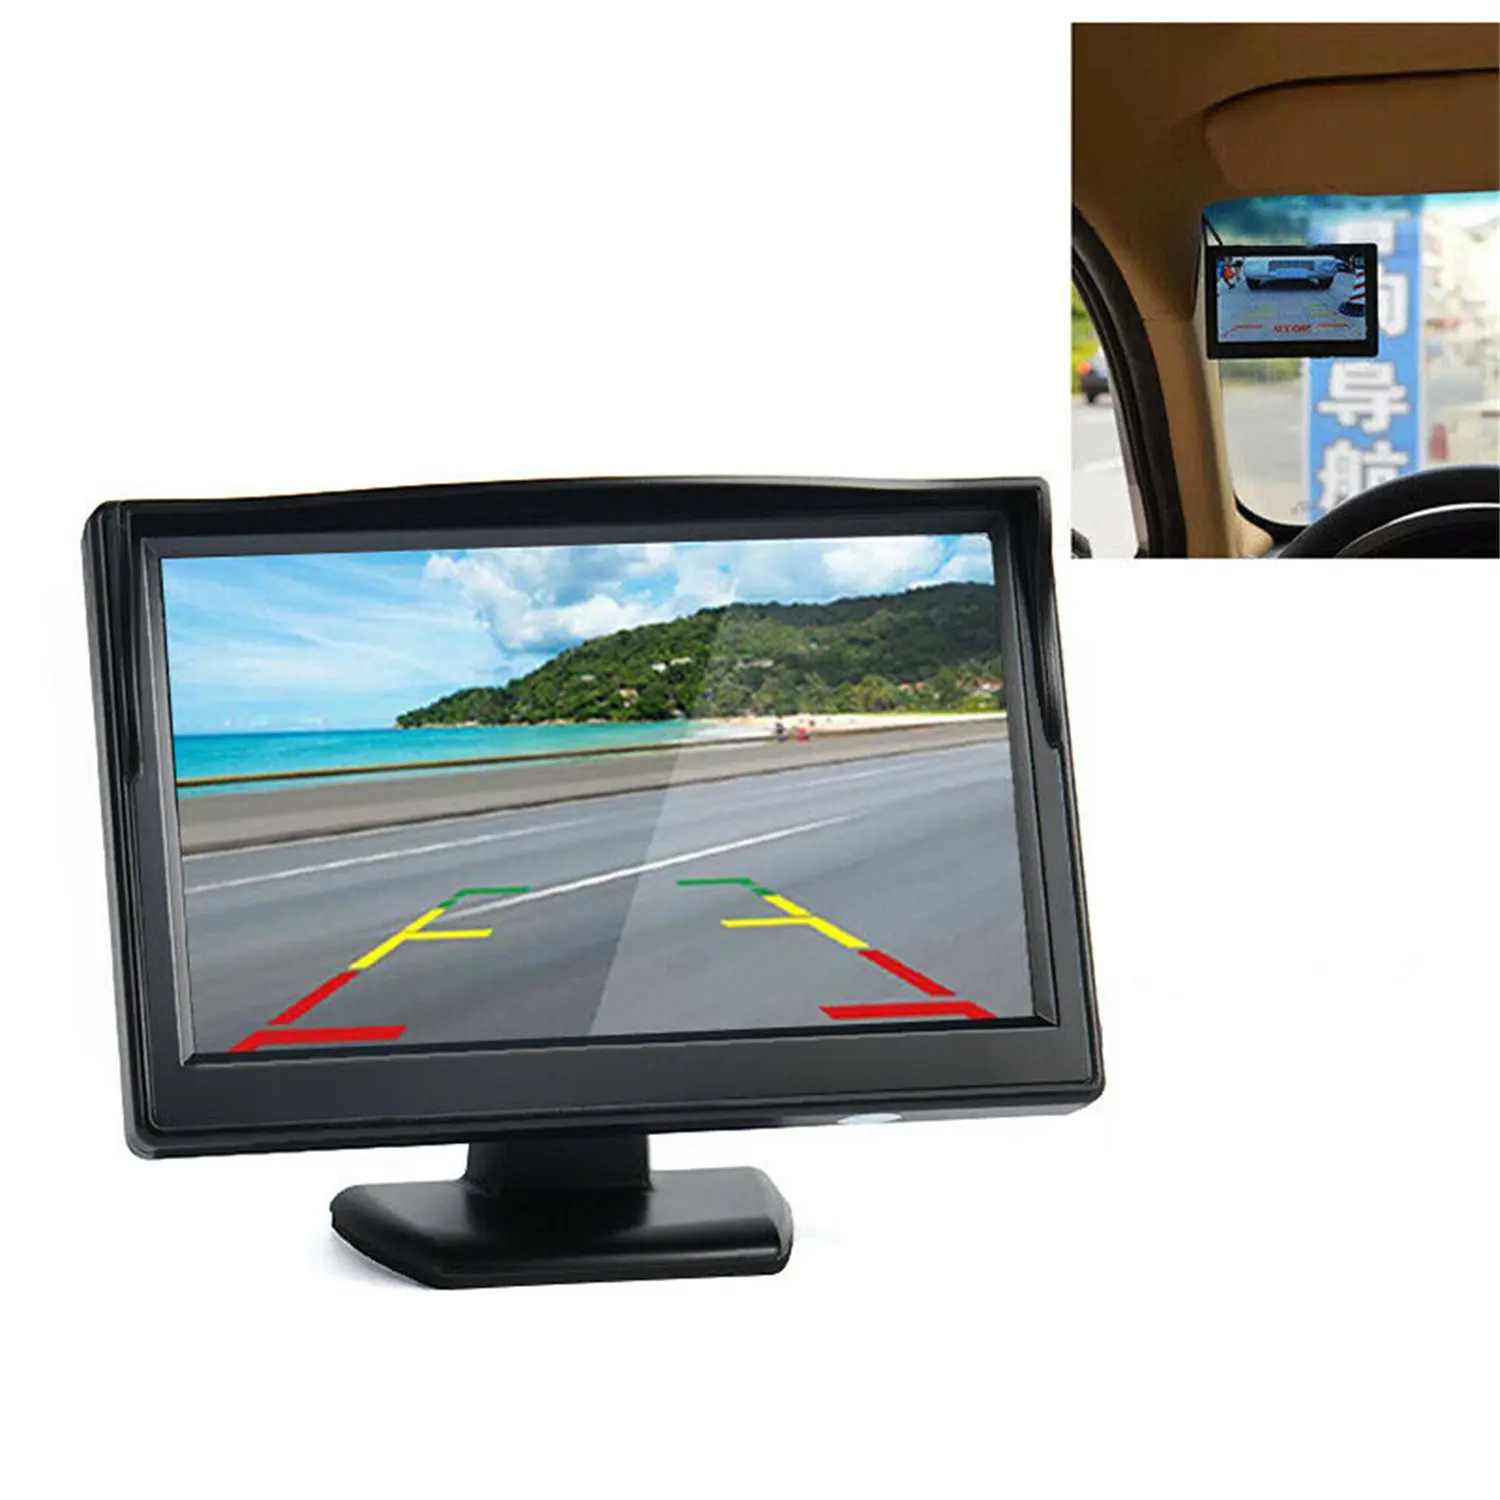 شاشة 5 بوصة كاميرا خلفية احتياطية للسيارة نظام مراقبة الرؤية الخلفية